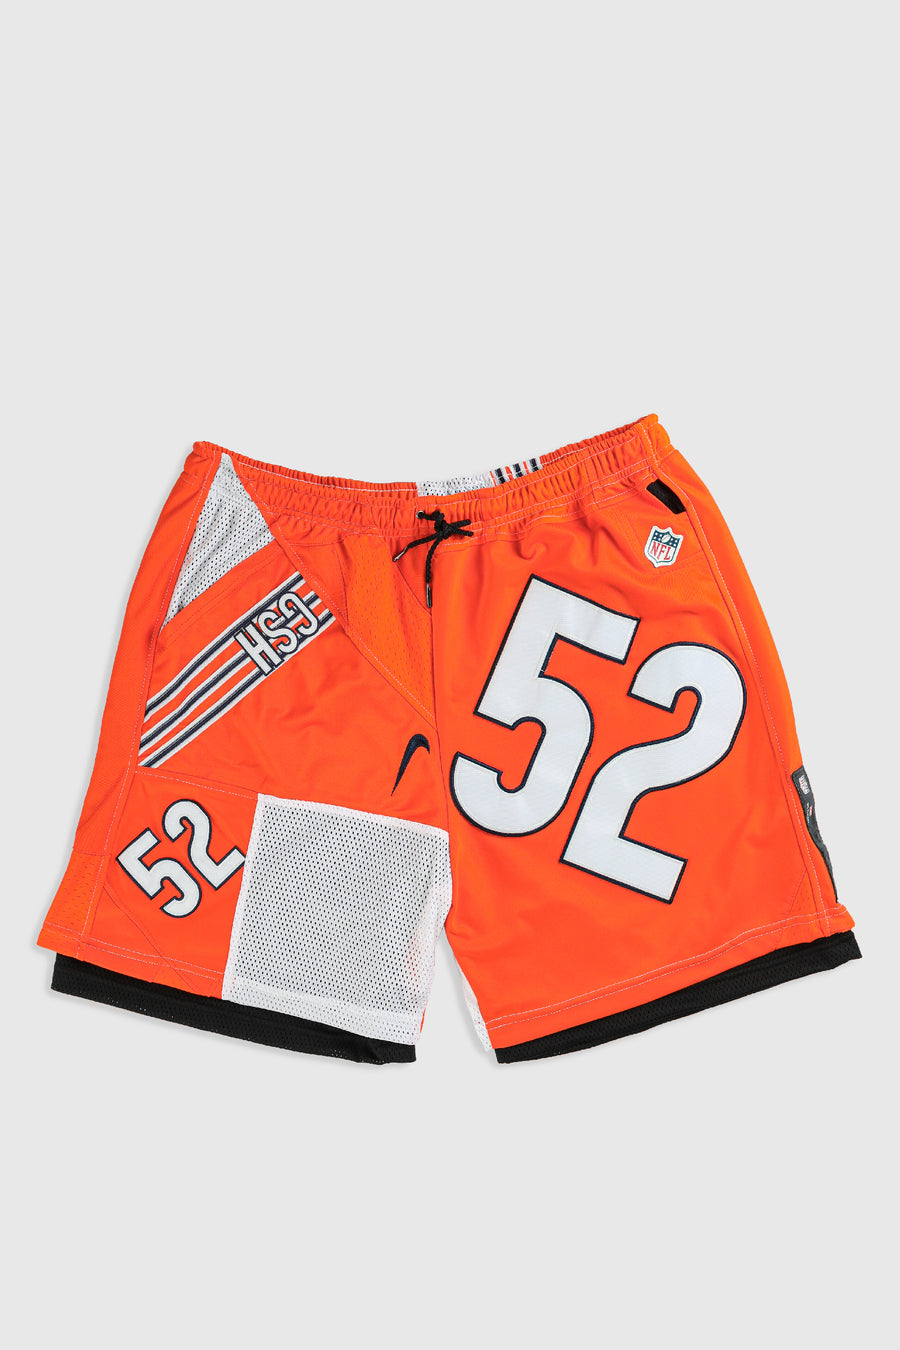 Unisex Rework Bears NFL Jersey Shorts - 2XL